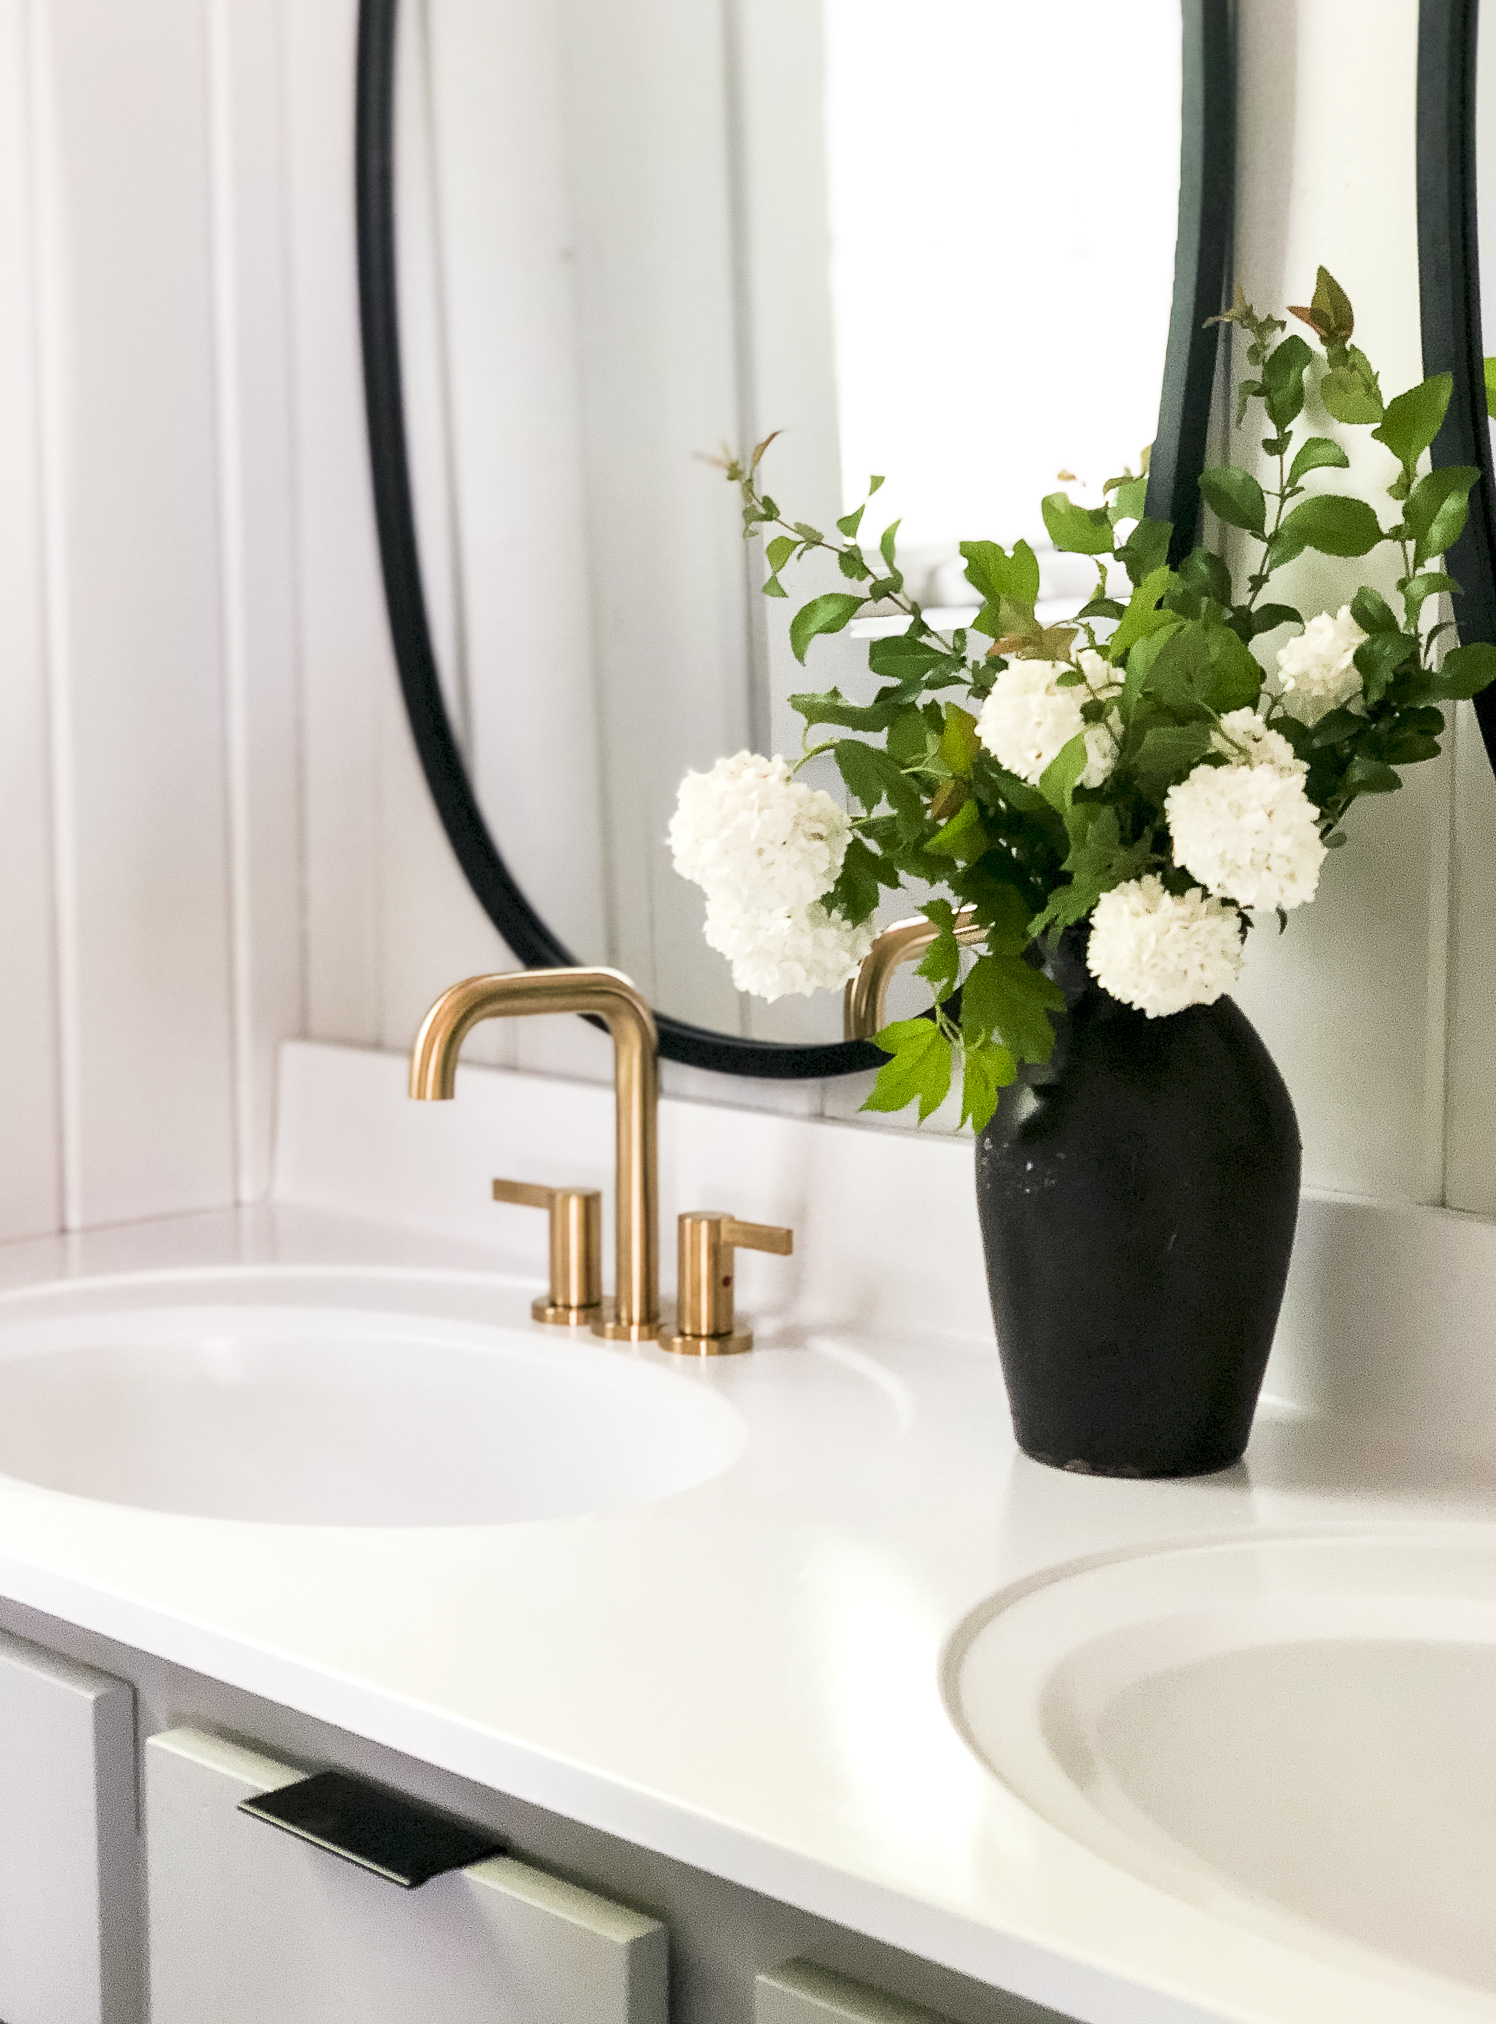 Rénovez votre salle de bains avec nos conseils utiles.